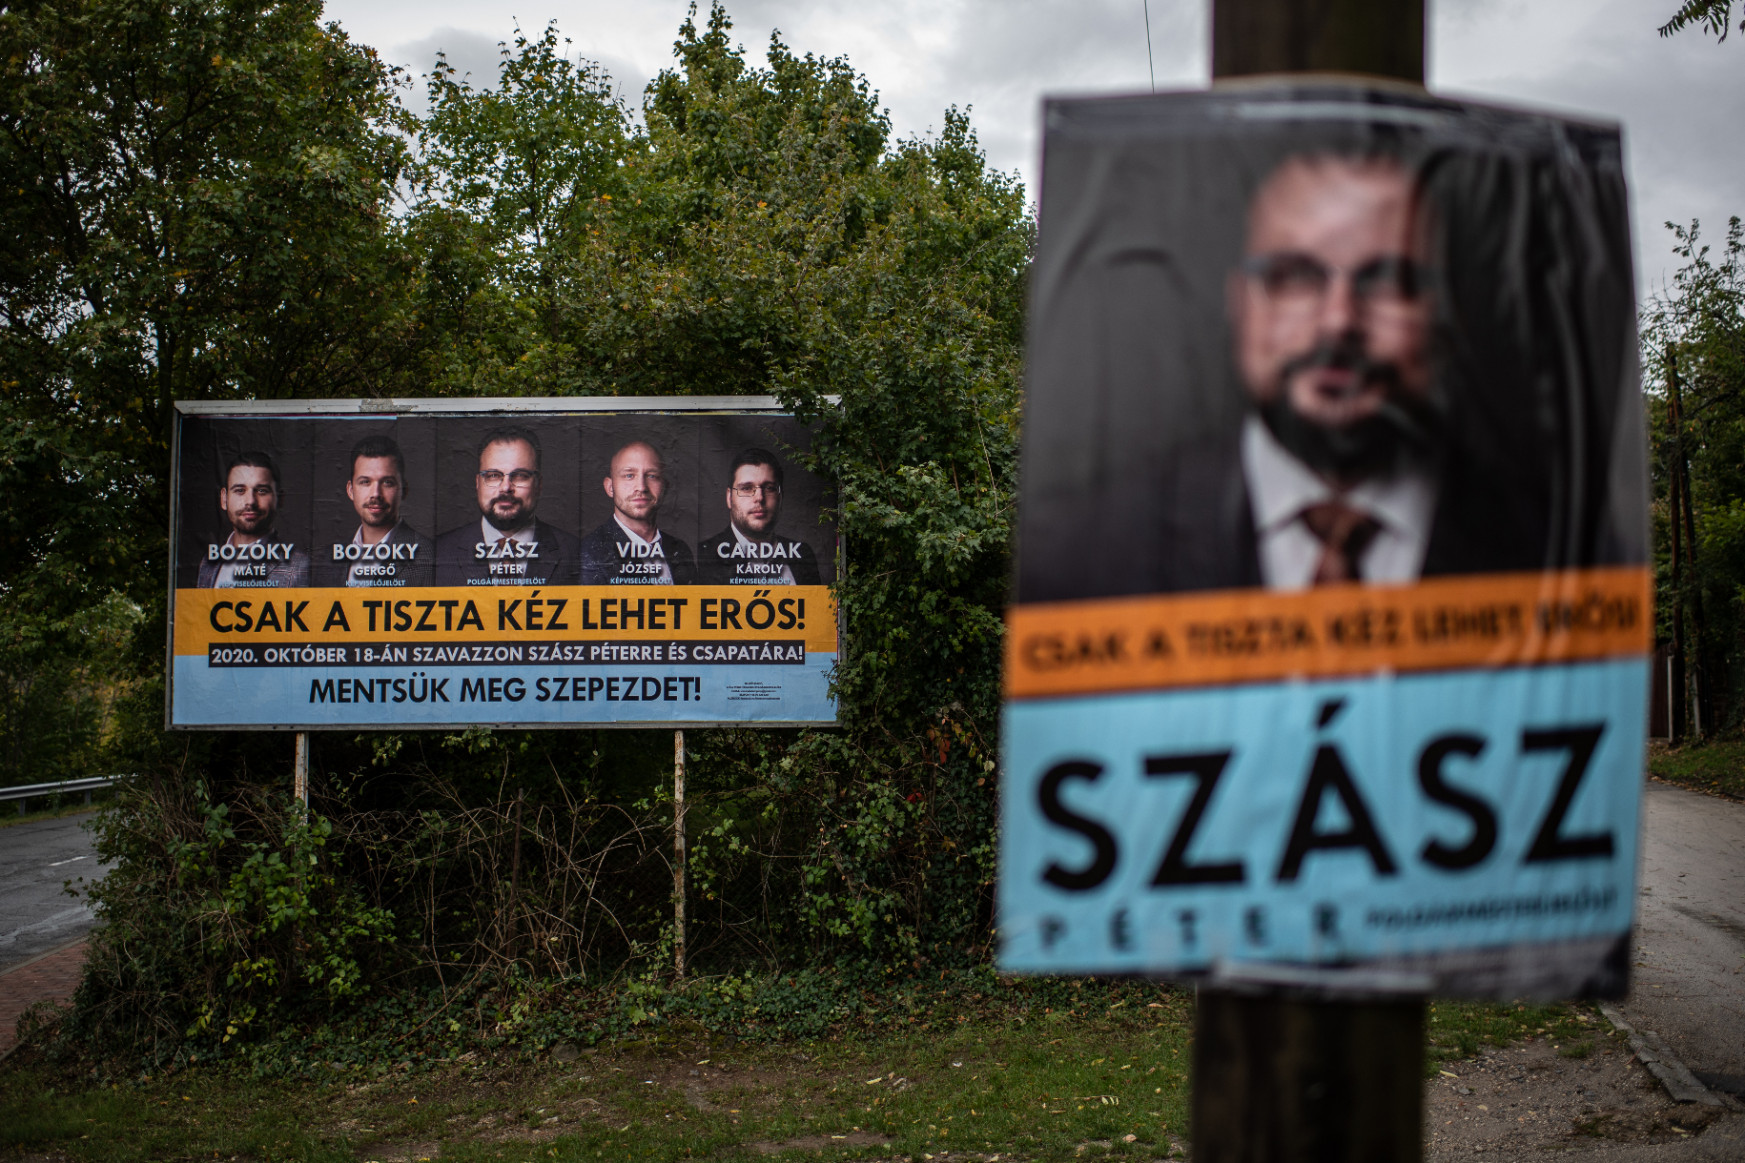 Narancssárgával kampányolt, tolta a fideszes média, végül hárman szavaztak rá